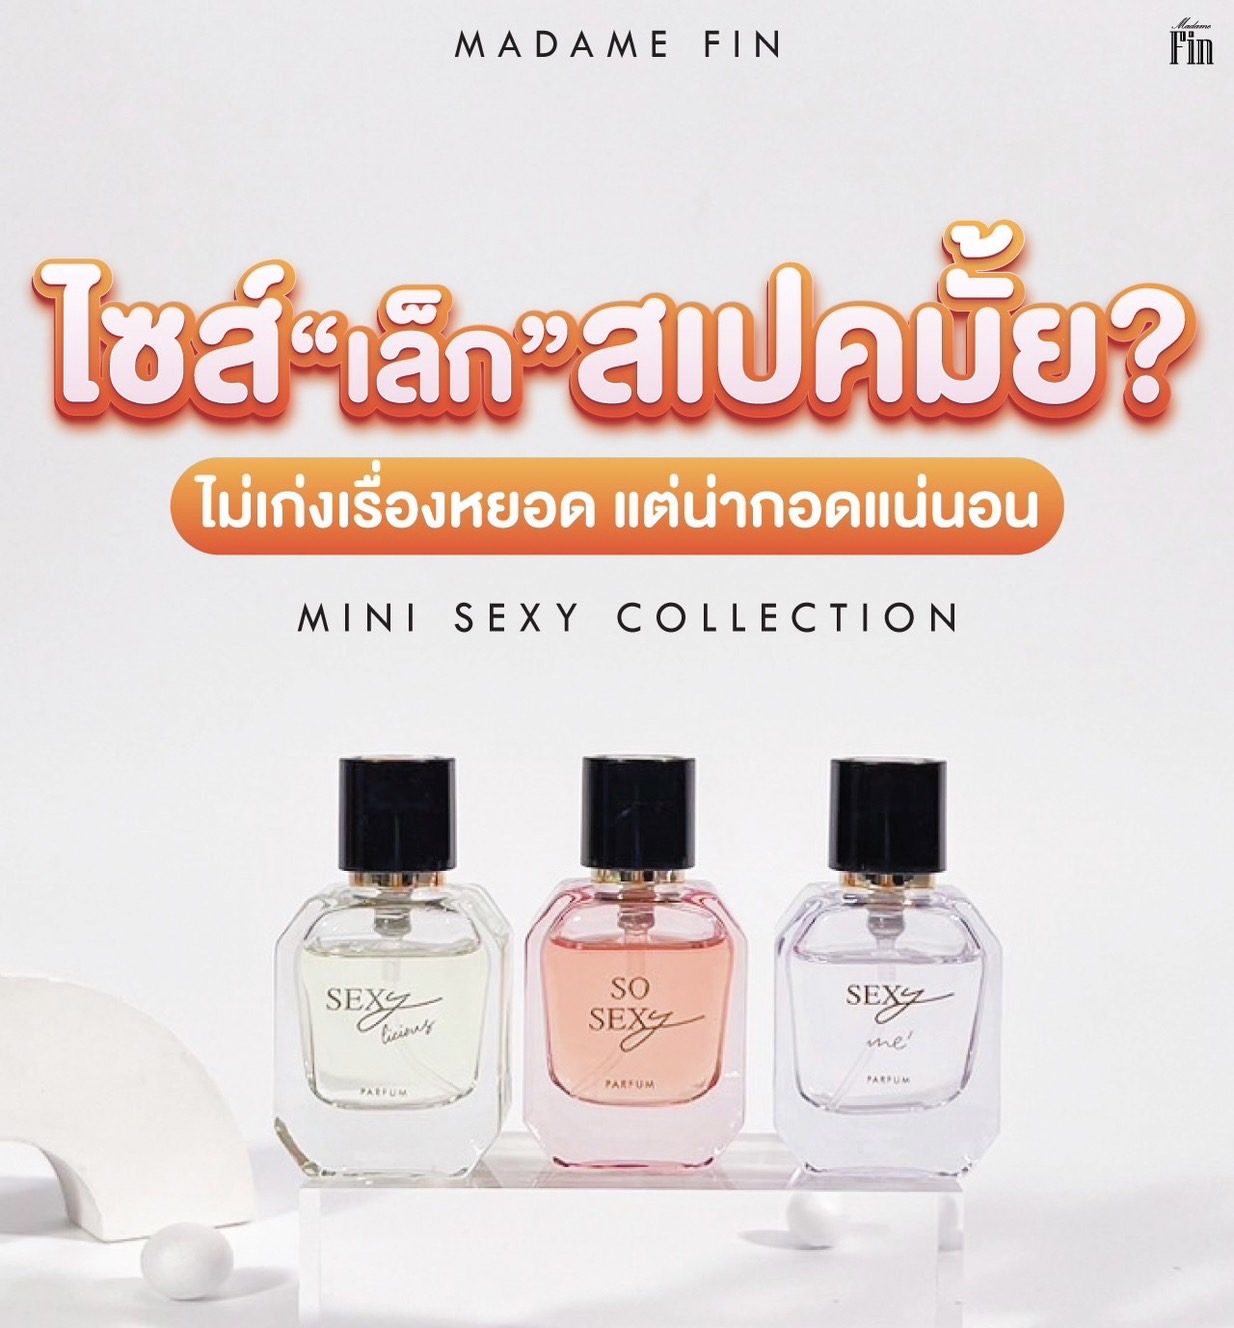 รูปภาพที่3 ของสินค้า : Madame fin น้ำหอมSEXY Collection ขนาด 10ml.  SO SEXY  กลิ่นหอมสุดเซ็กซี่ ที่มีเอกลักษณ์เฉพาะตัว 